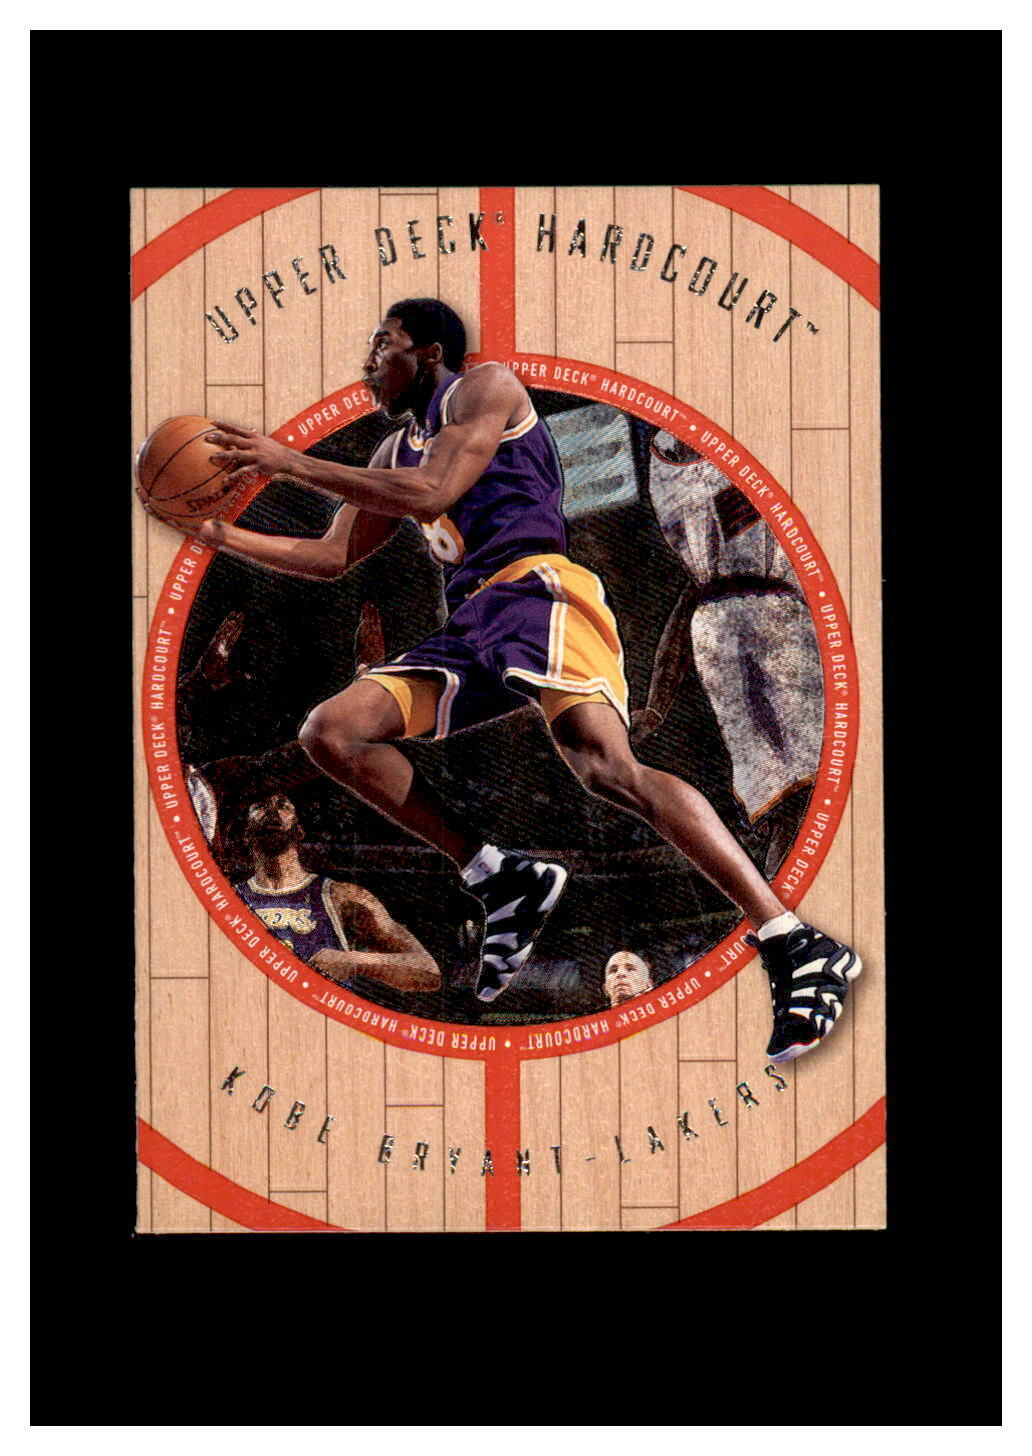 1998-99 Upper Deck Hardcourt # 8-G Kobe Bryant NM-MT OR BETTER *GMCARDS*